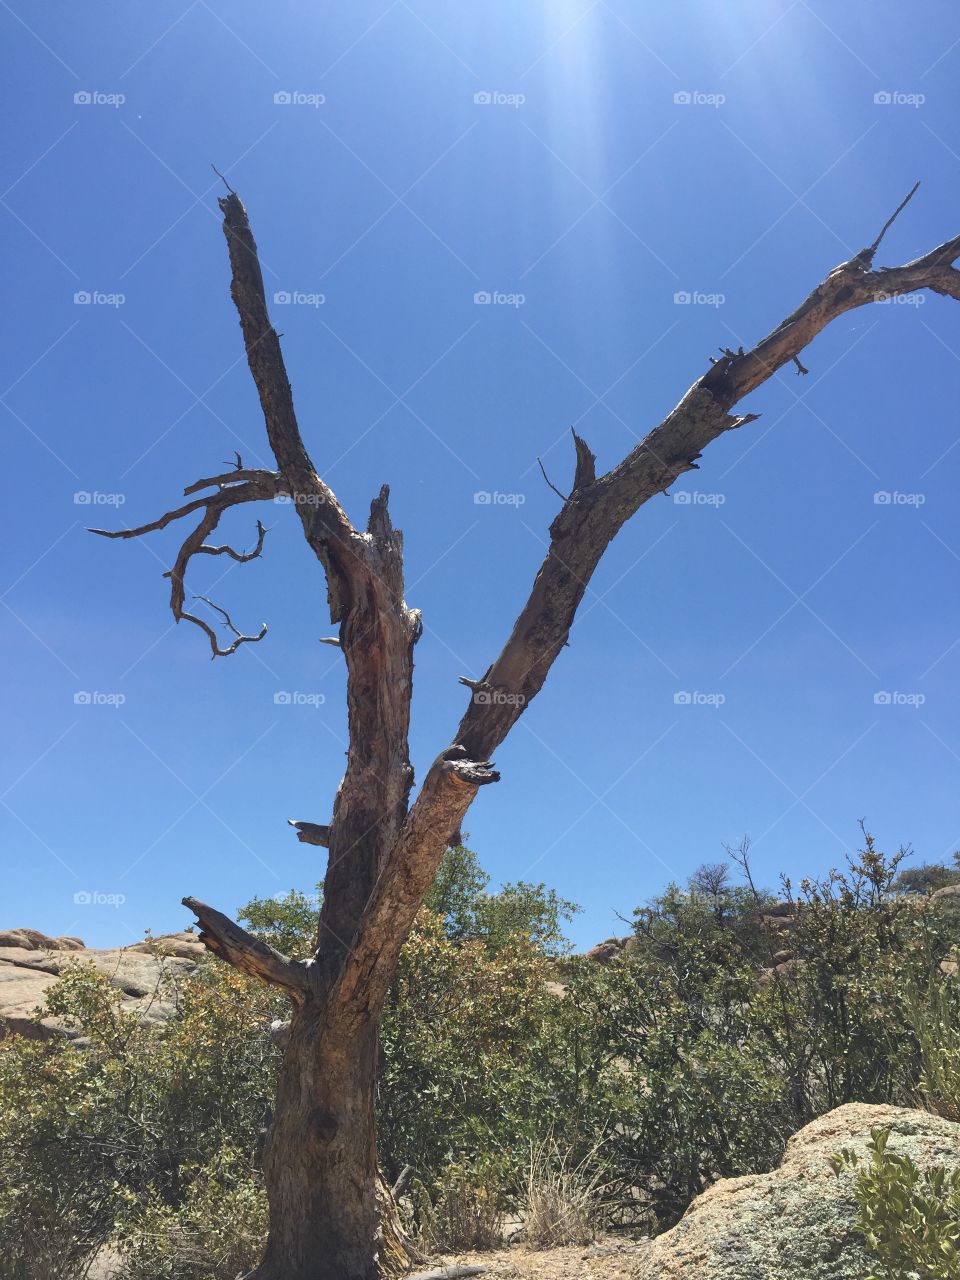 Lone tree in Arizona desert. 